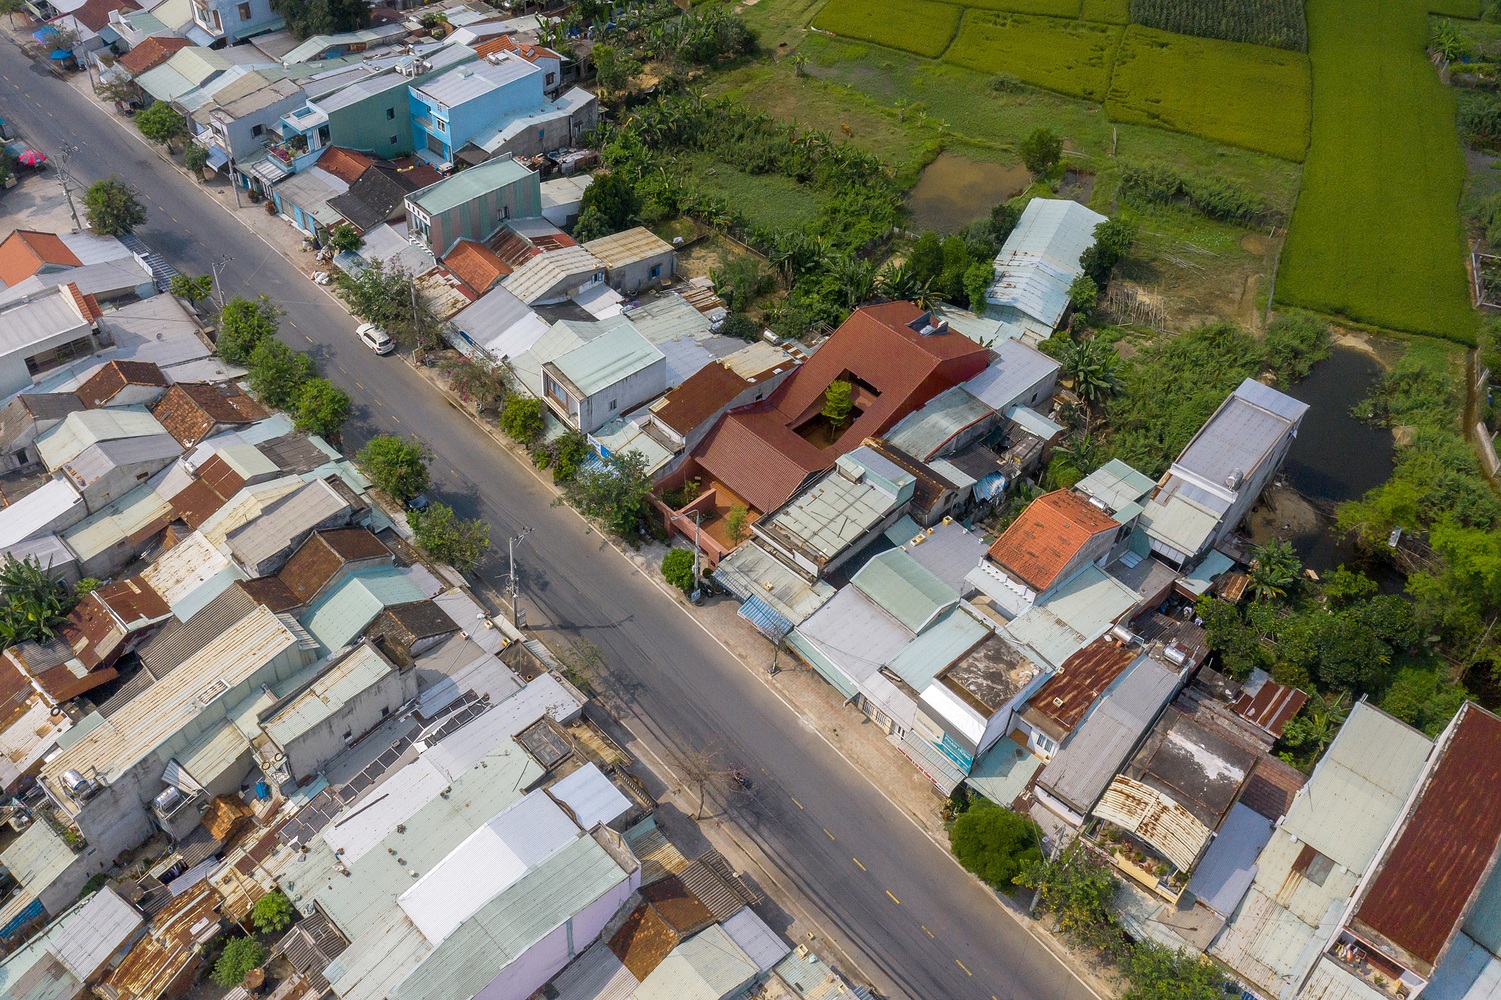 Mô hình gia đình "tứ đại đồng đường" mặc dù hiếm gặp tại các thành phố lớn nhưng khá phổ biến tại các vùng quê Việt Nam. Các gia đình nhỏ sống quây quần cùng nhau trong một không gian, tạo thành một đại gia đình.